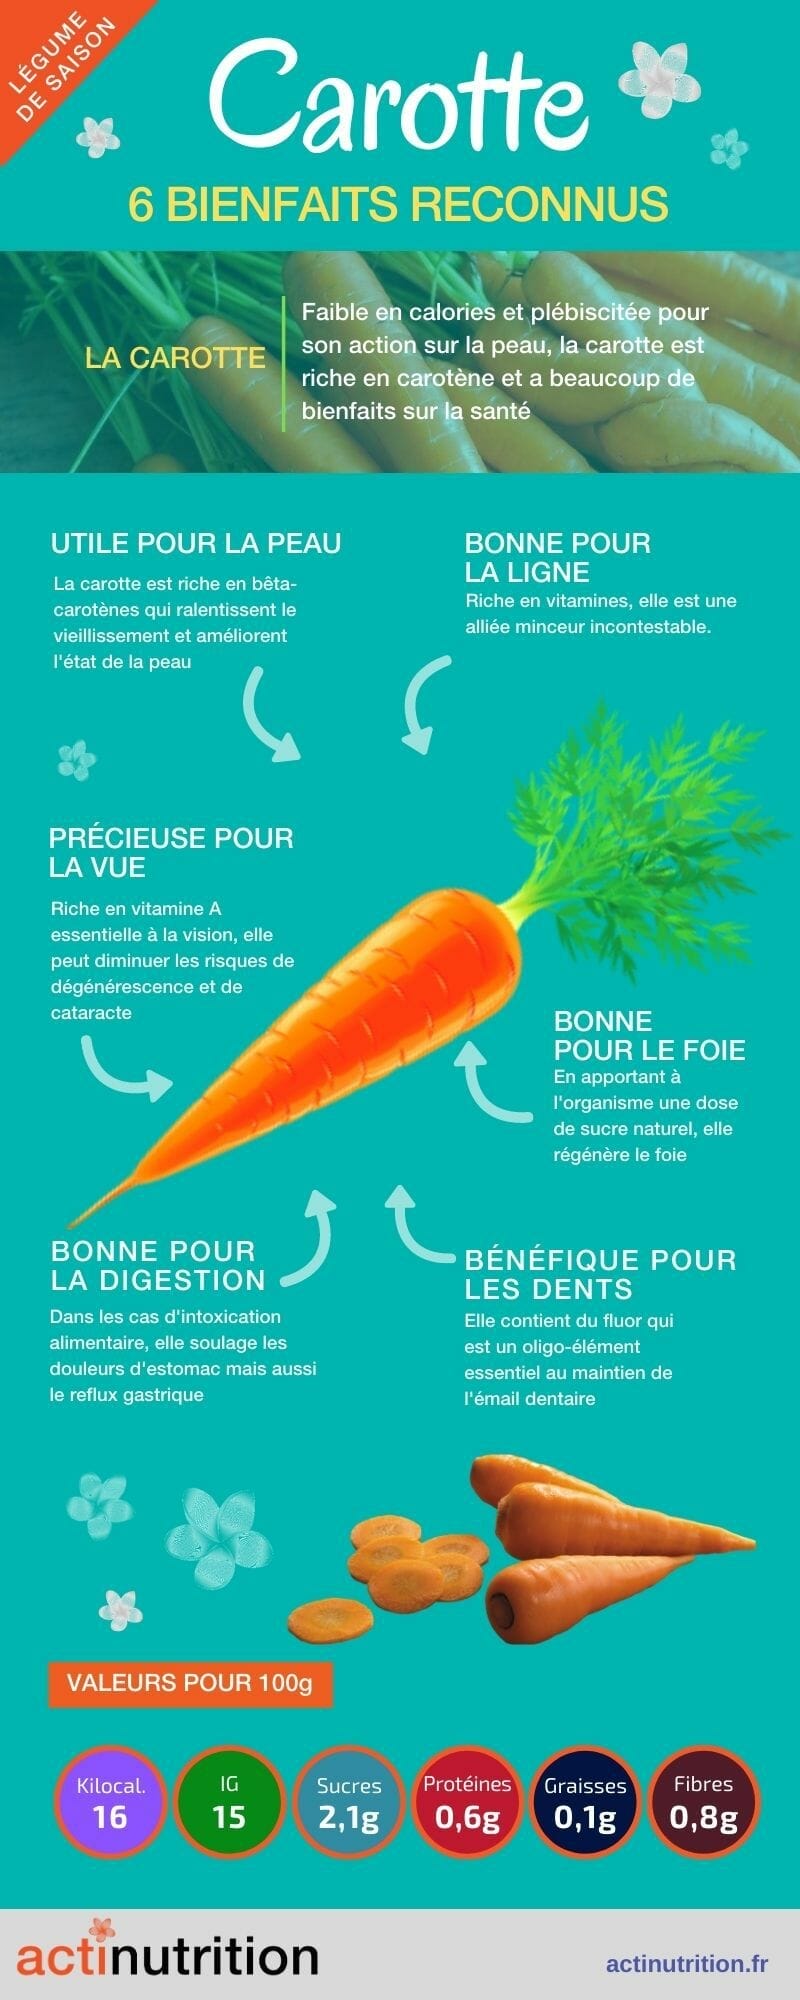 Les 7 vertus et bienfaits de la carotte - FemininBio